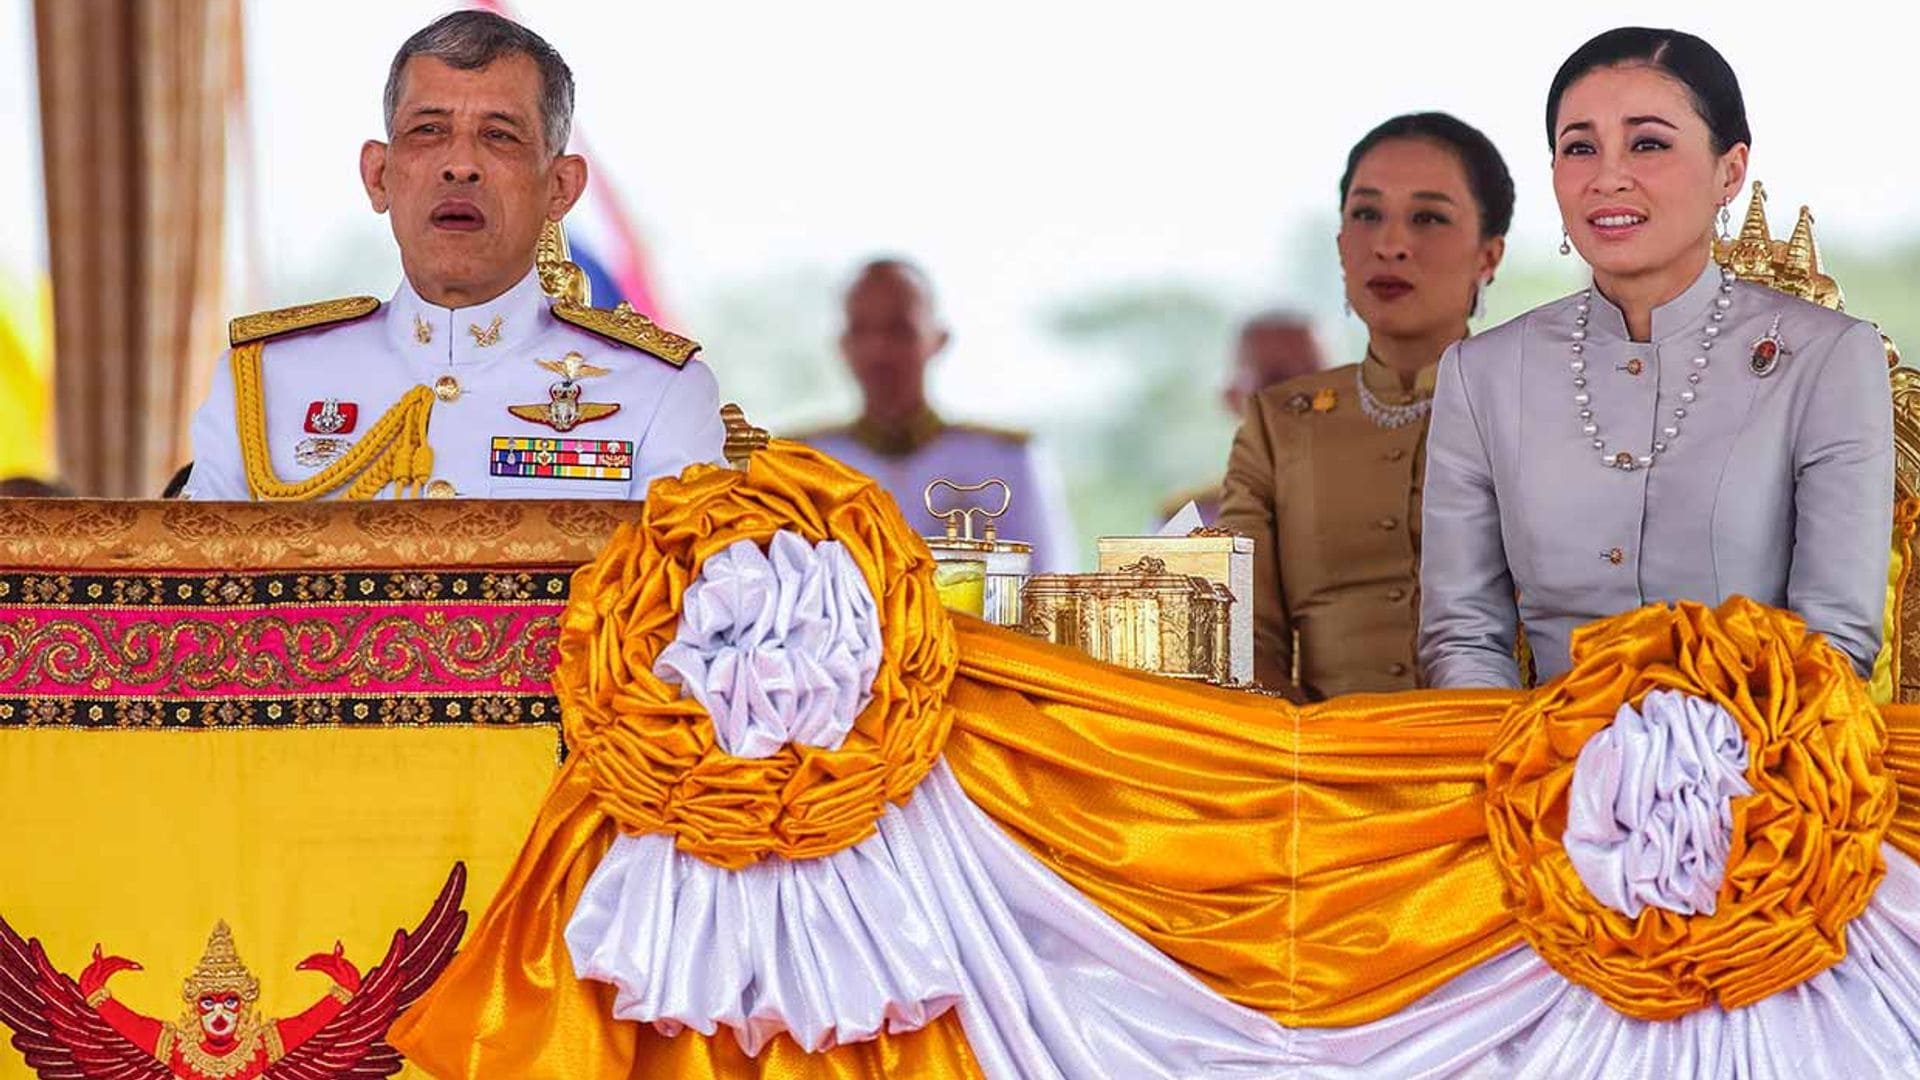 El controvertido confinamiento del rey de Tailandia